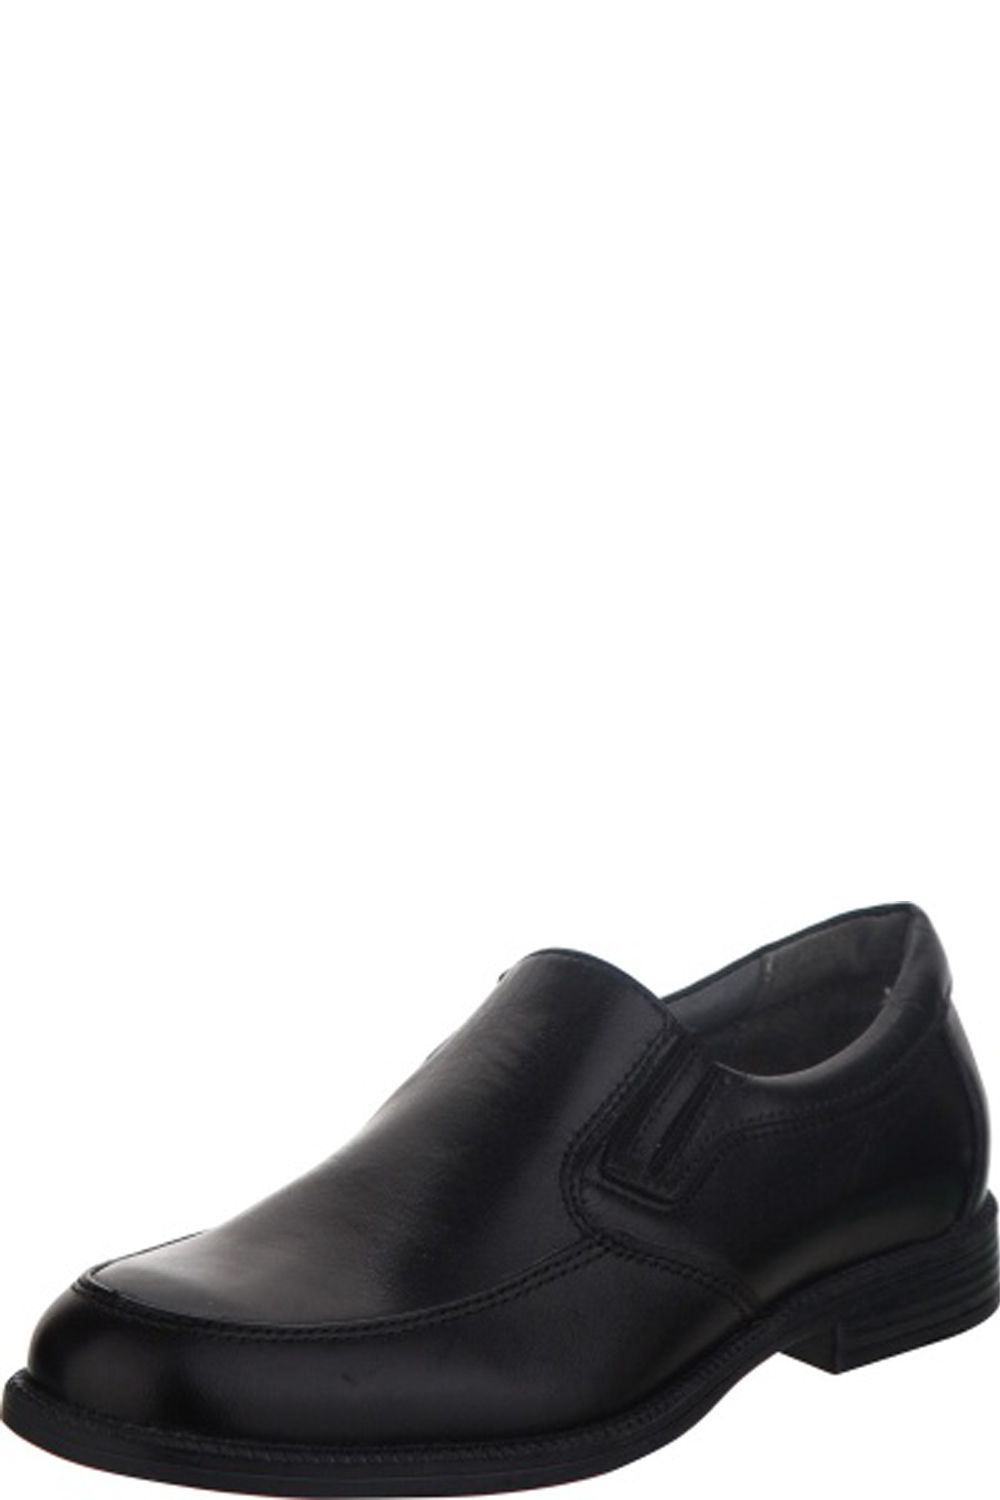 Туфли Kapika, размер 35, цвет черный - фото 1